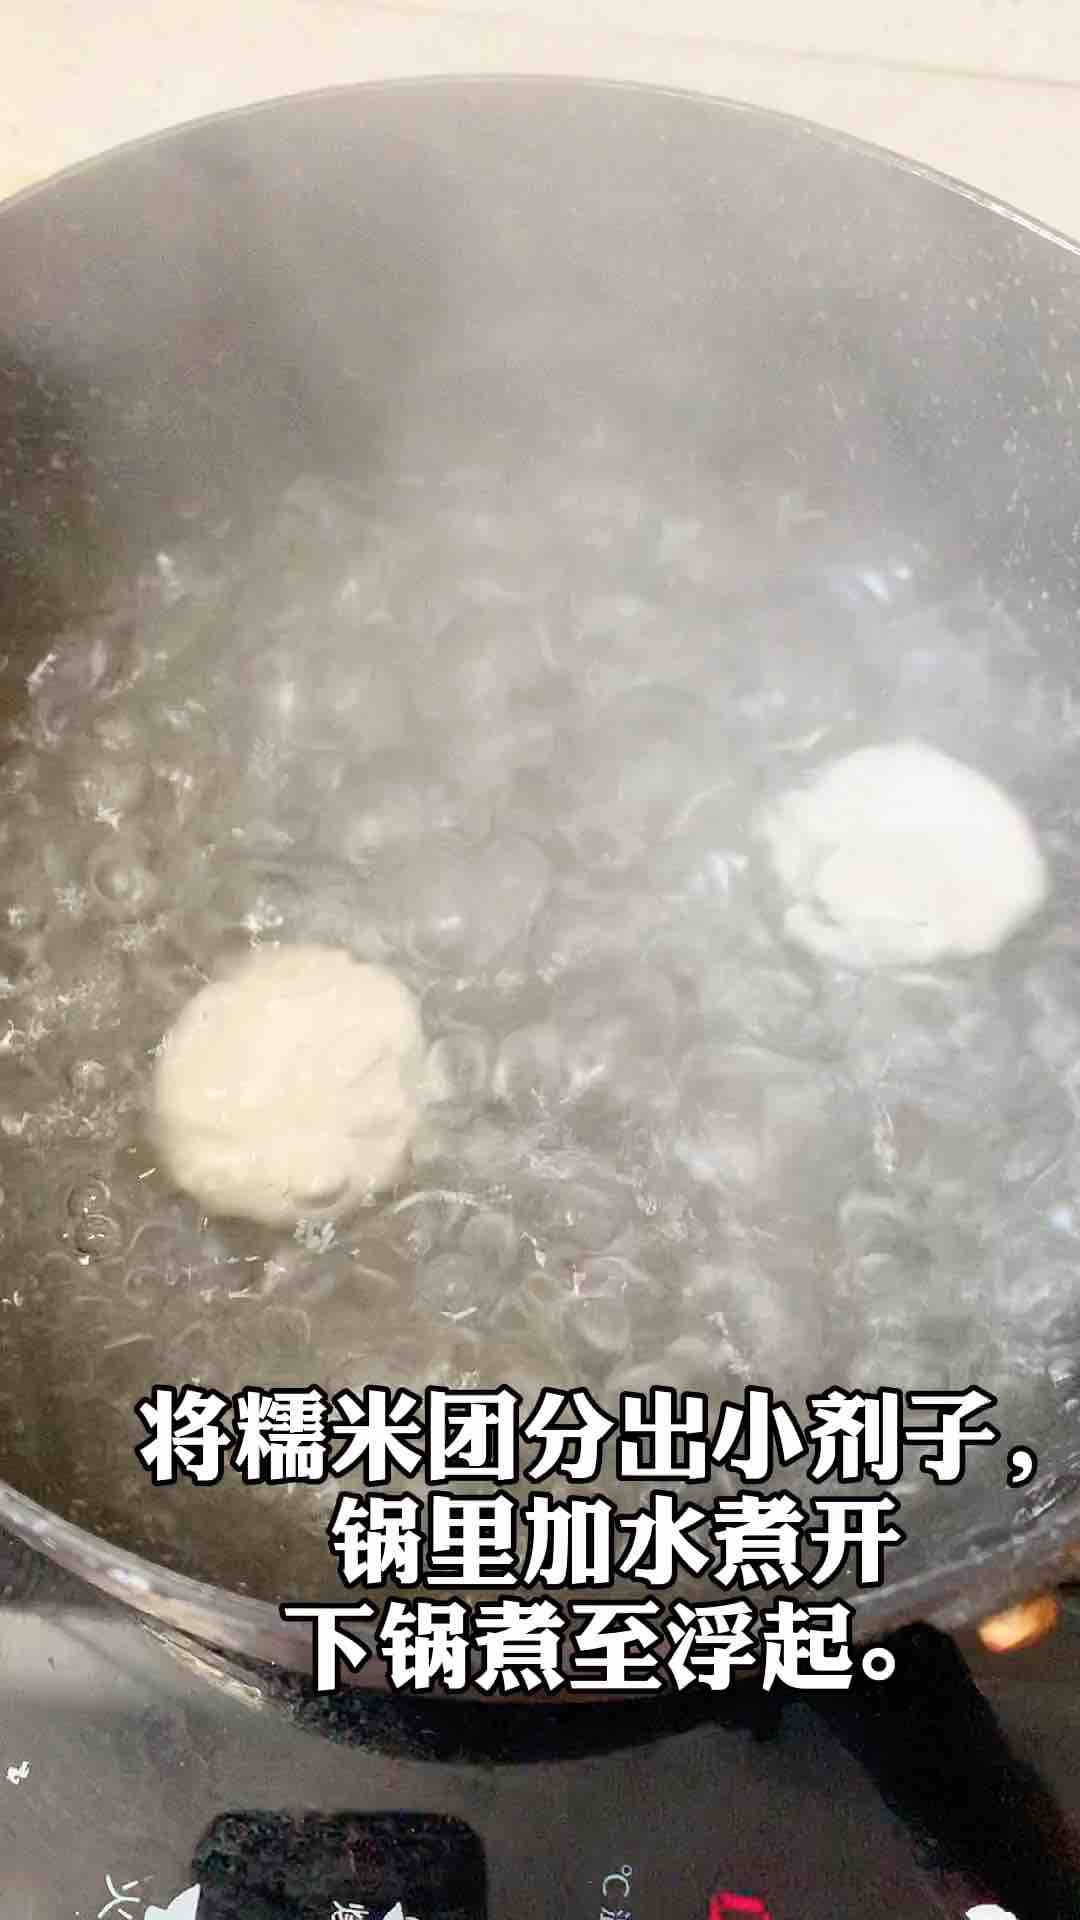 #冬至大如年# Simple Version of Wenzhou Mochi, Eat One Long One recipe